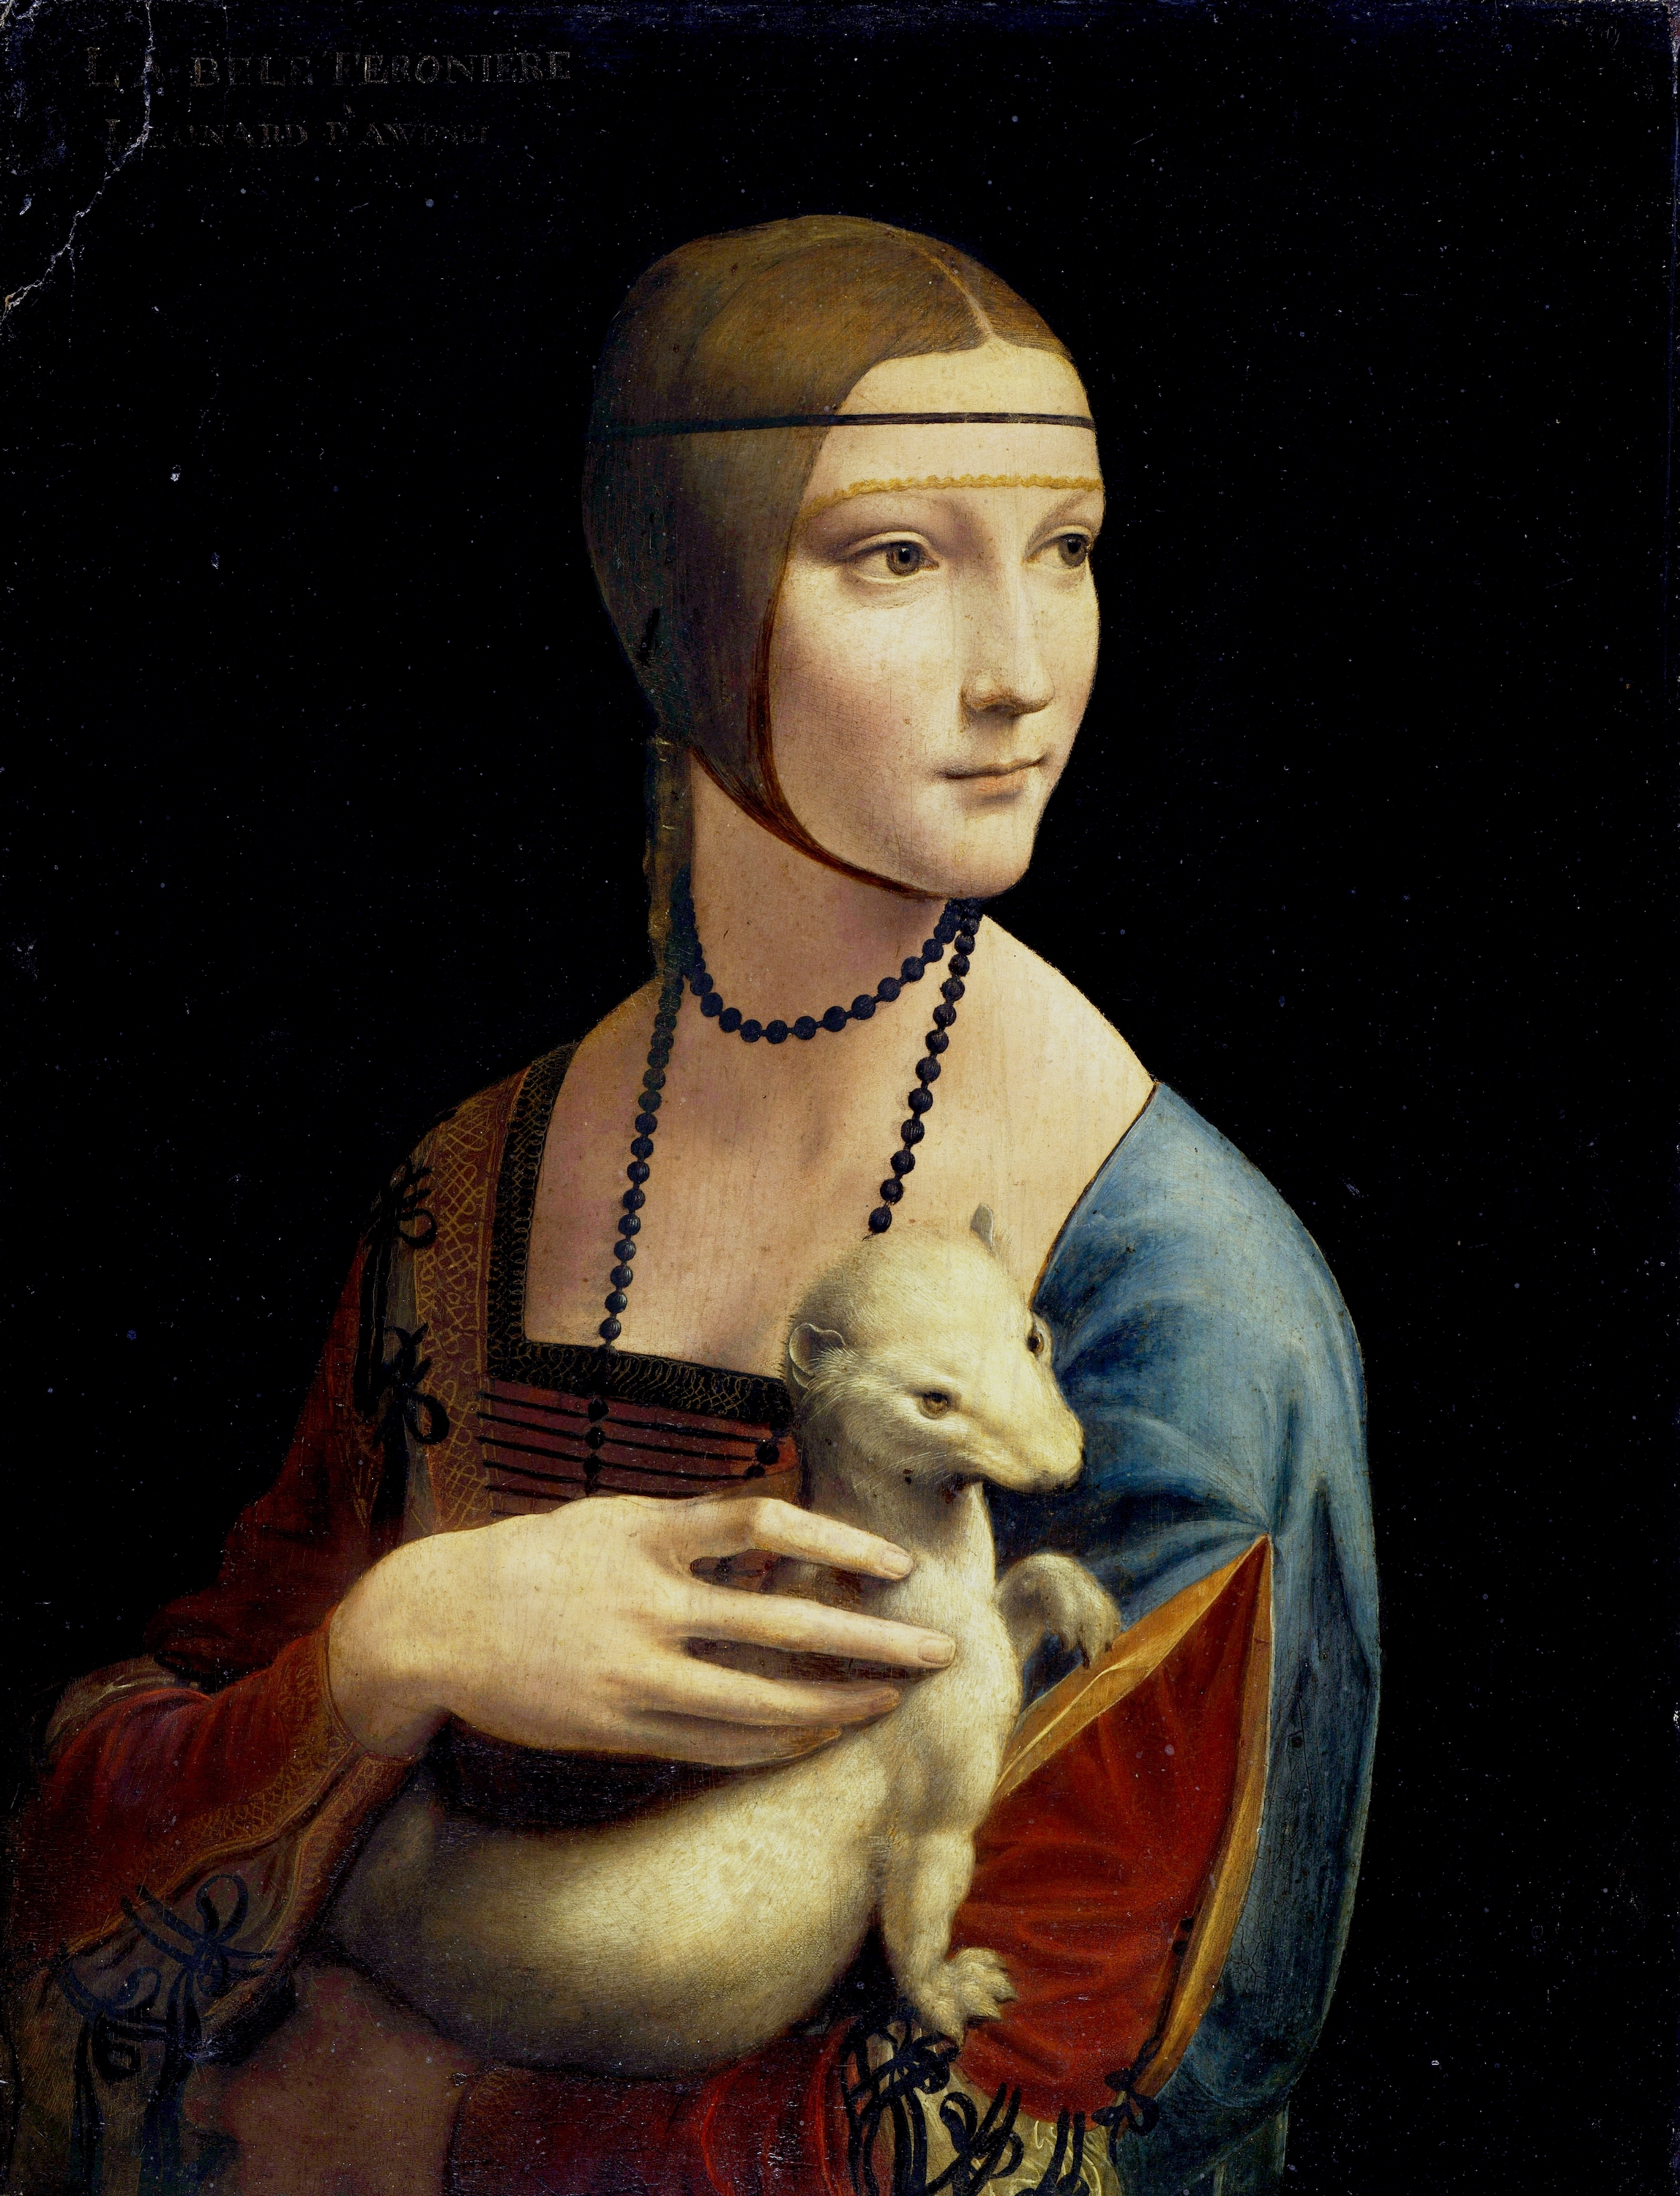 अर्मिन के साथ महिला (लेडी विथ थे अर्मिन) by Leonardo da Vinci - १४८९-९० - ५४ सें।मी।  × ३९ सें।मी।  